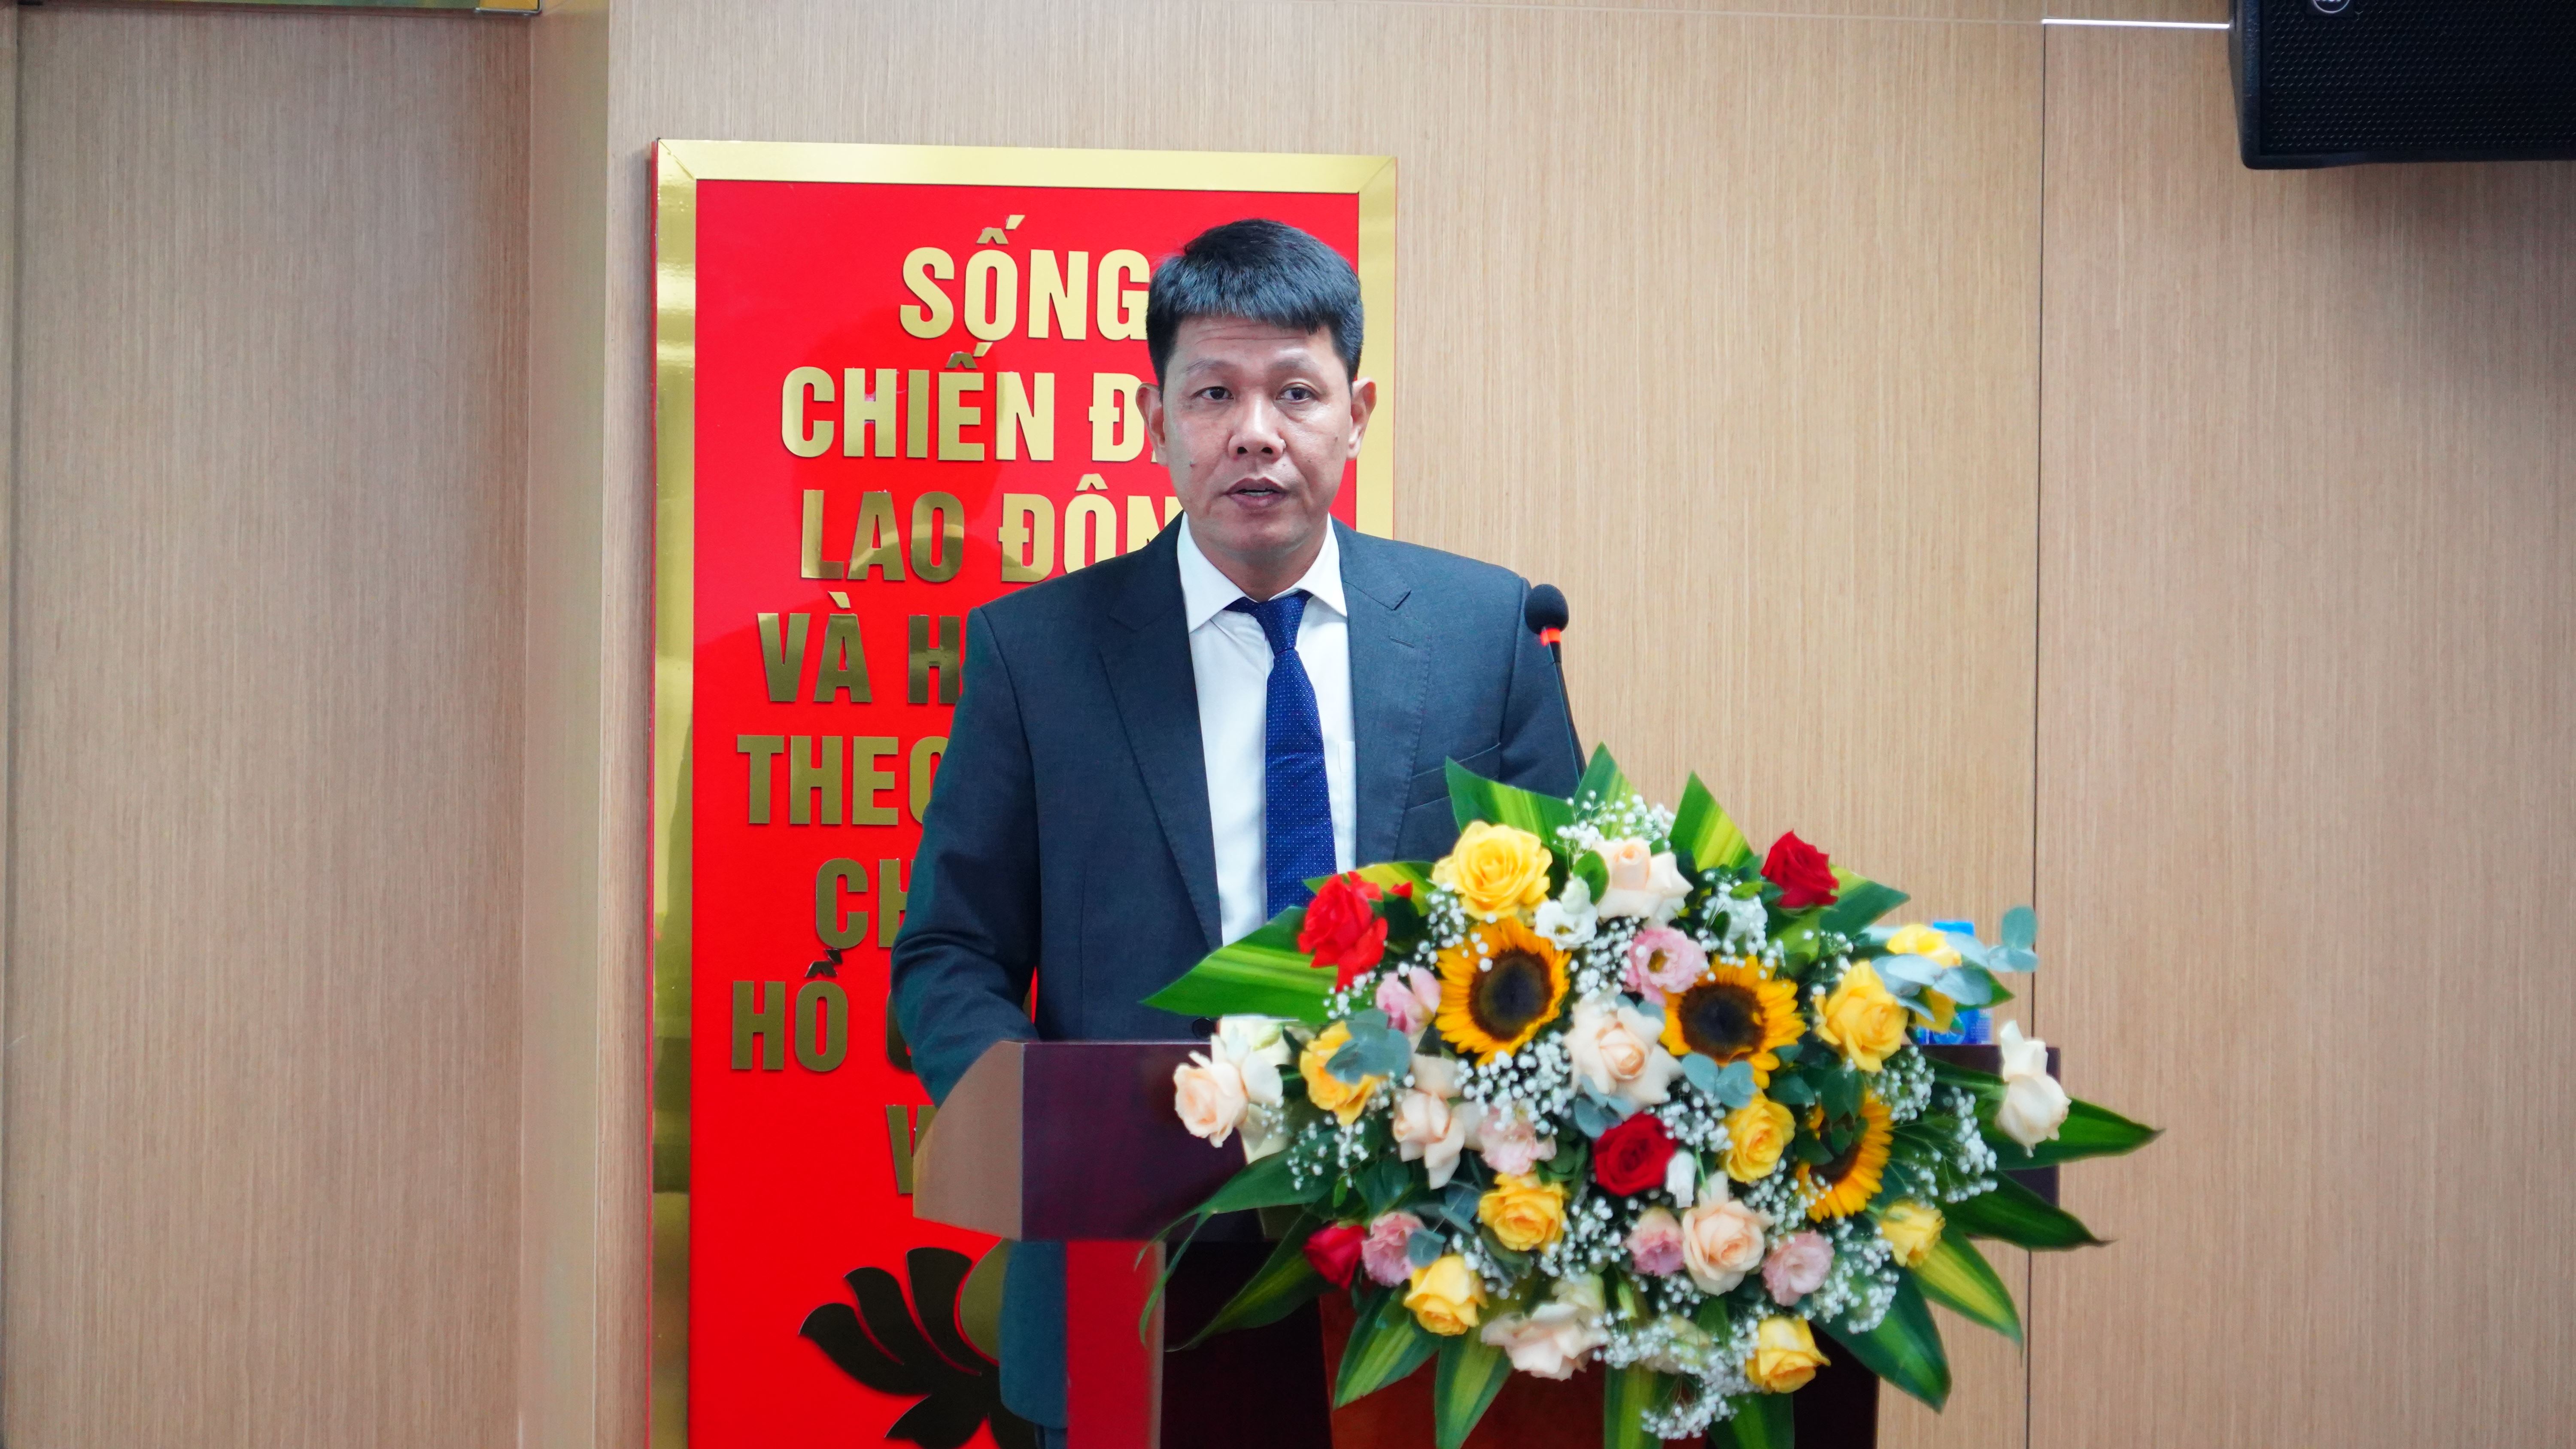 
Ông Nguyễn Hồng Phong, Tổng giám đóc Bảo hiểm Agribank (ABIC)
